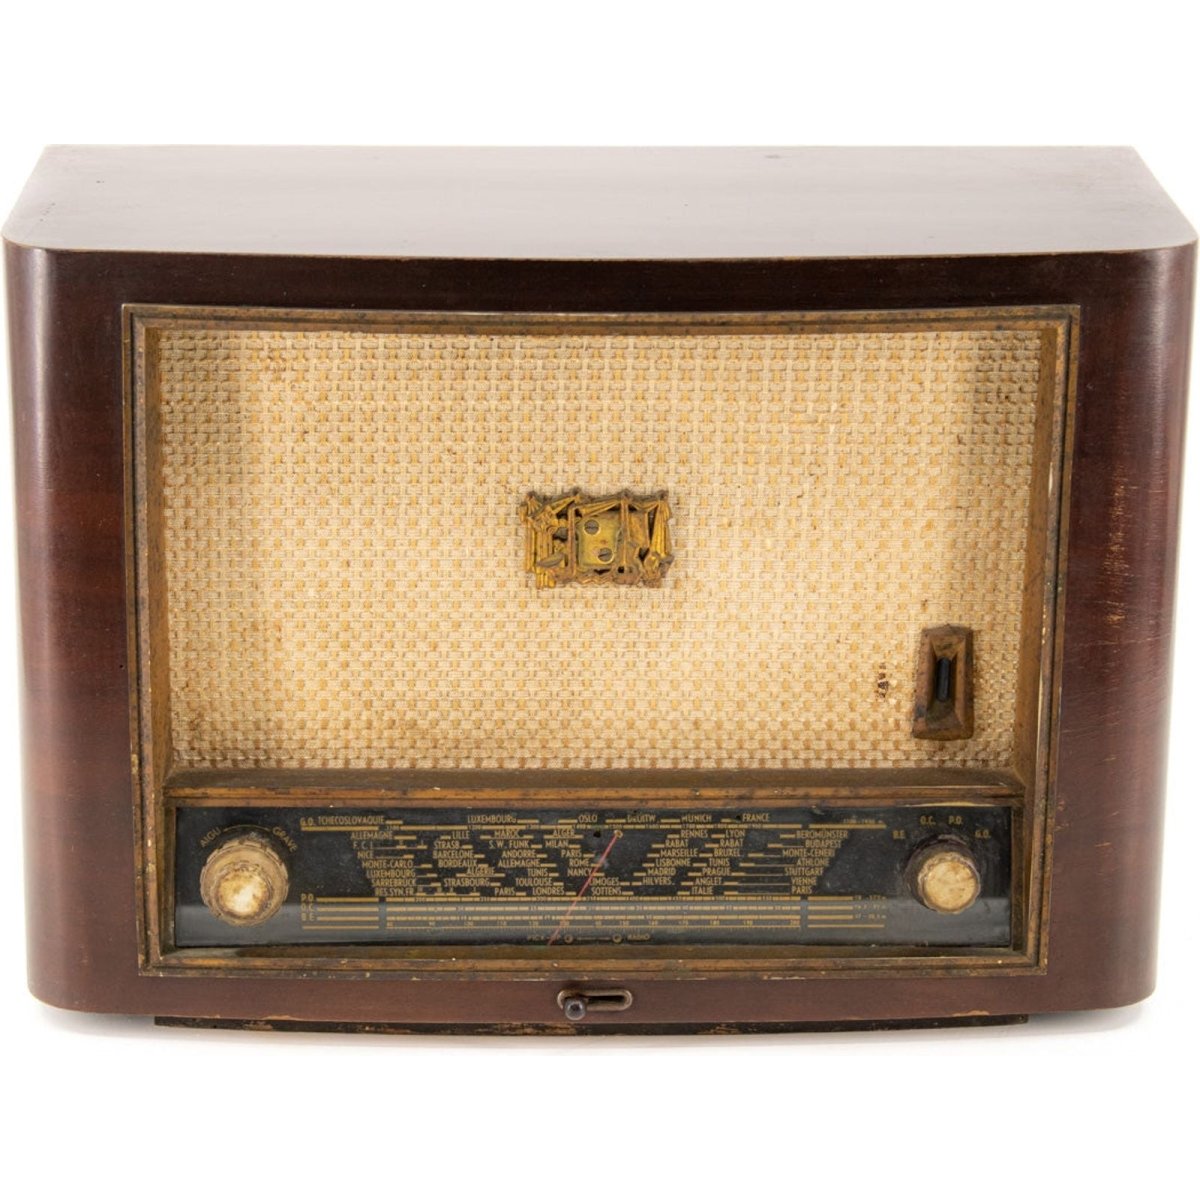 Radio Bluetooth Telemonde Vintage 50’S enceinte connectée française haut de gamme absolument prodige radio vintage